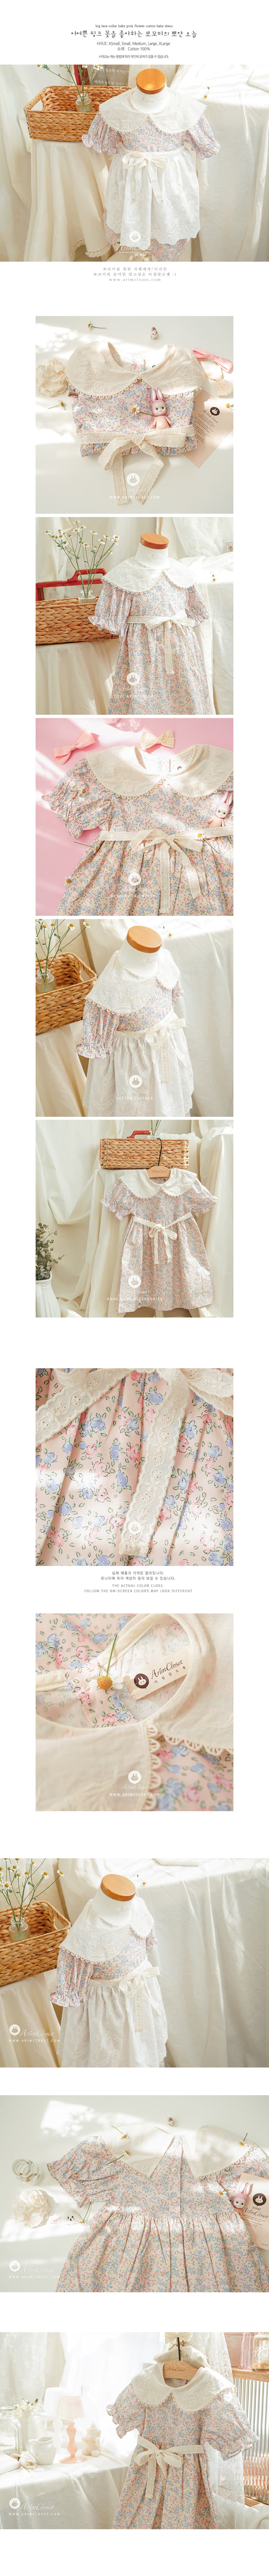 Arim Closet - Korean Baby Fashion - #babygirlfashion - Big Lace Collar Fower One-piece - 2